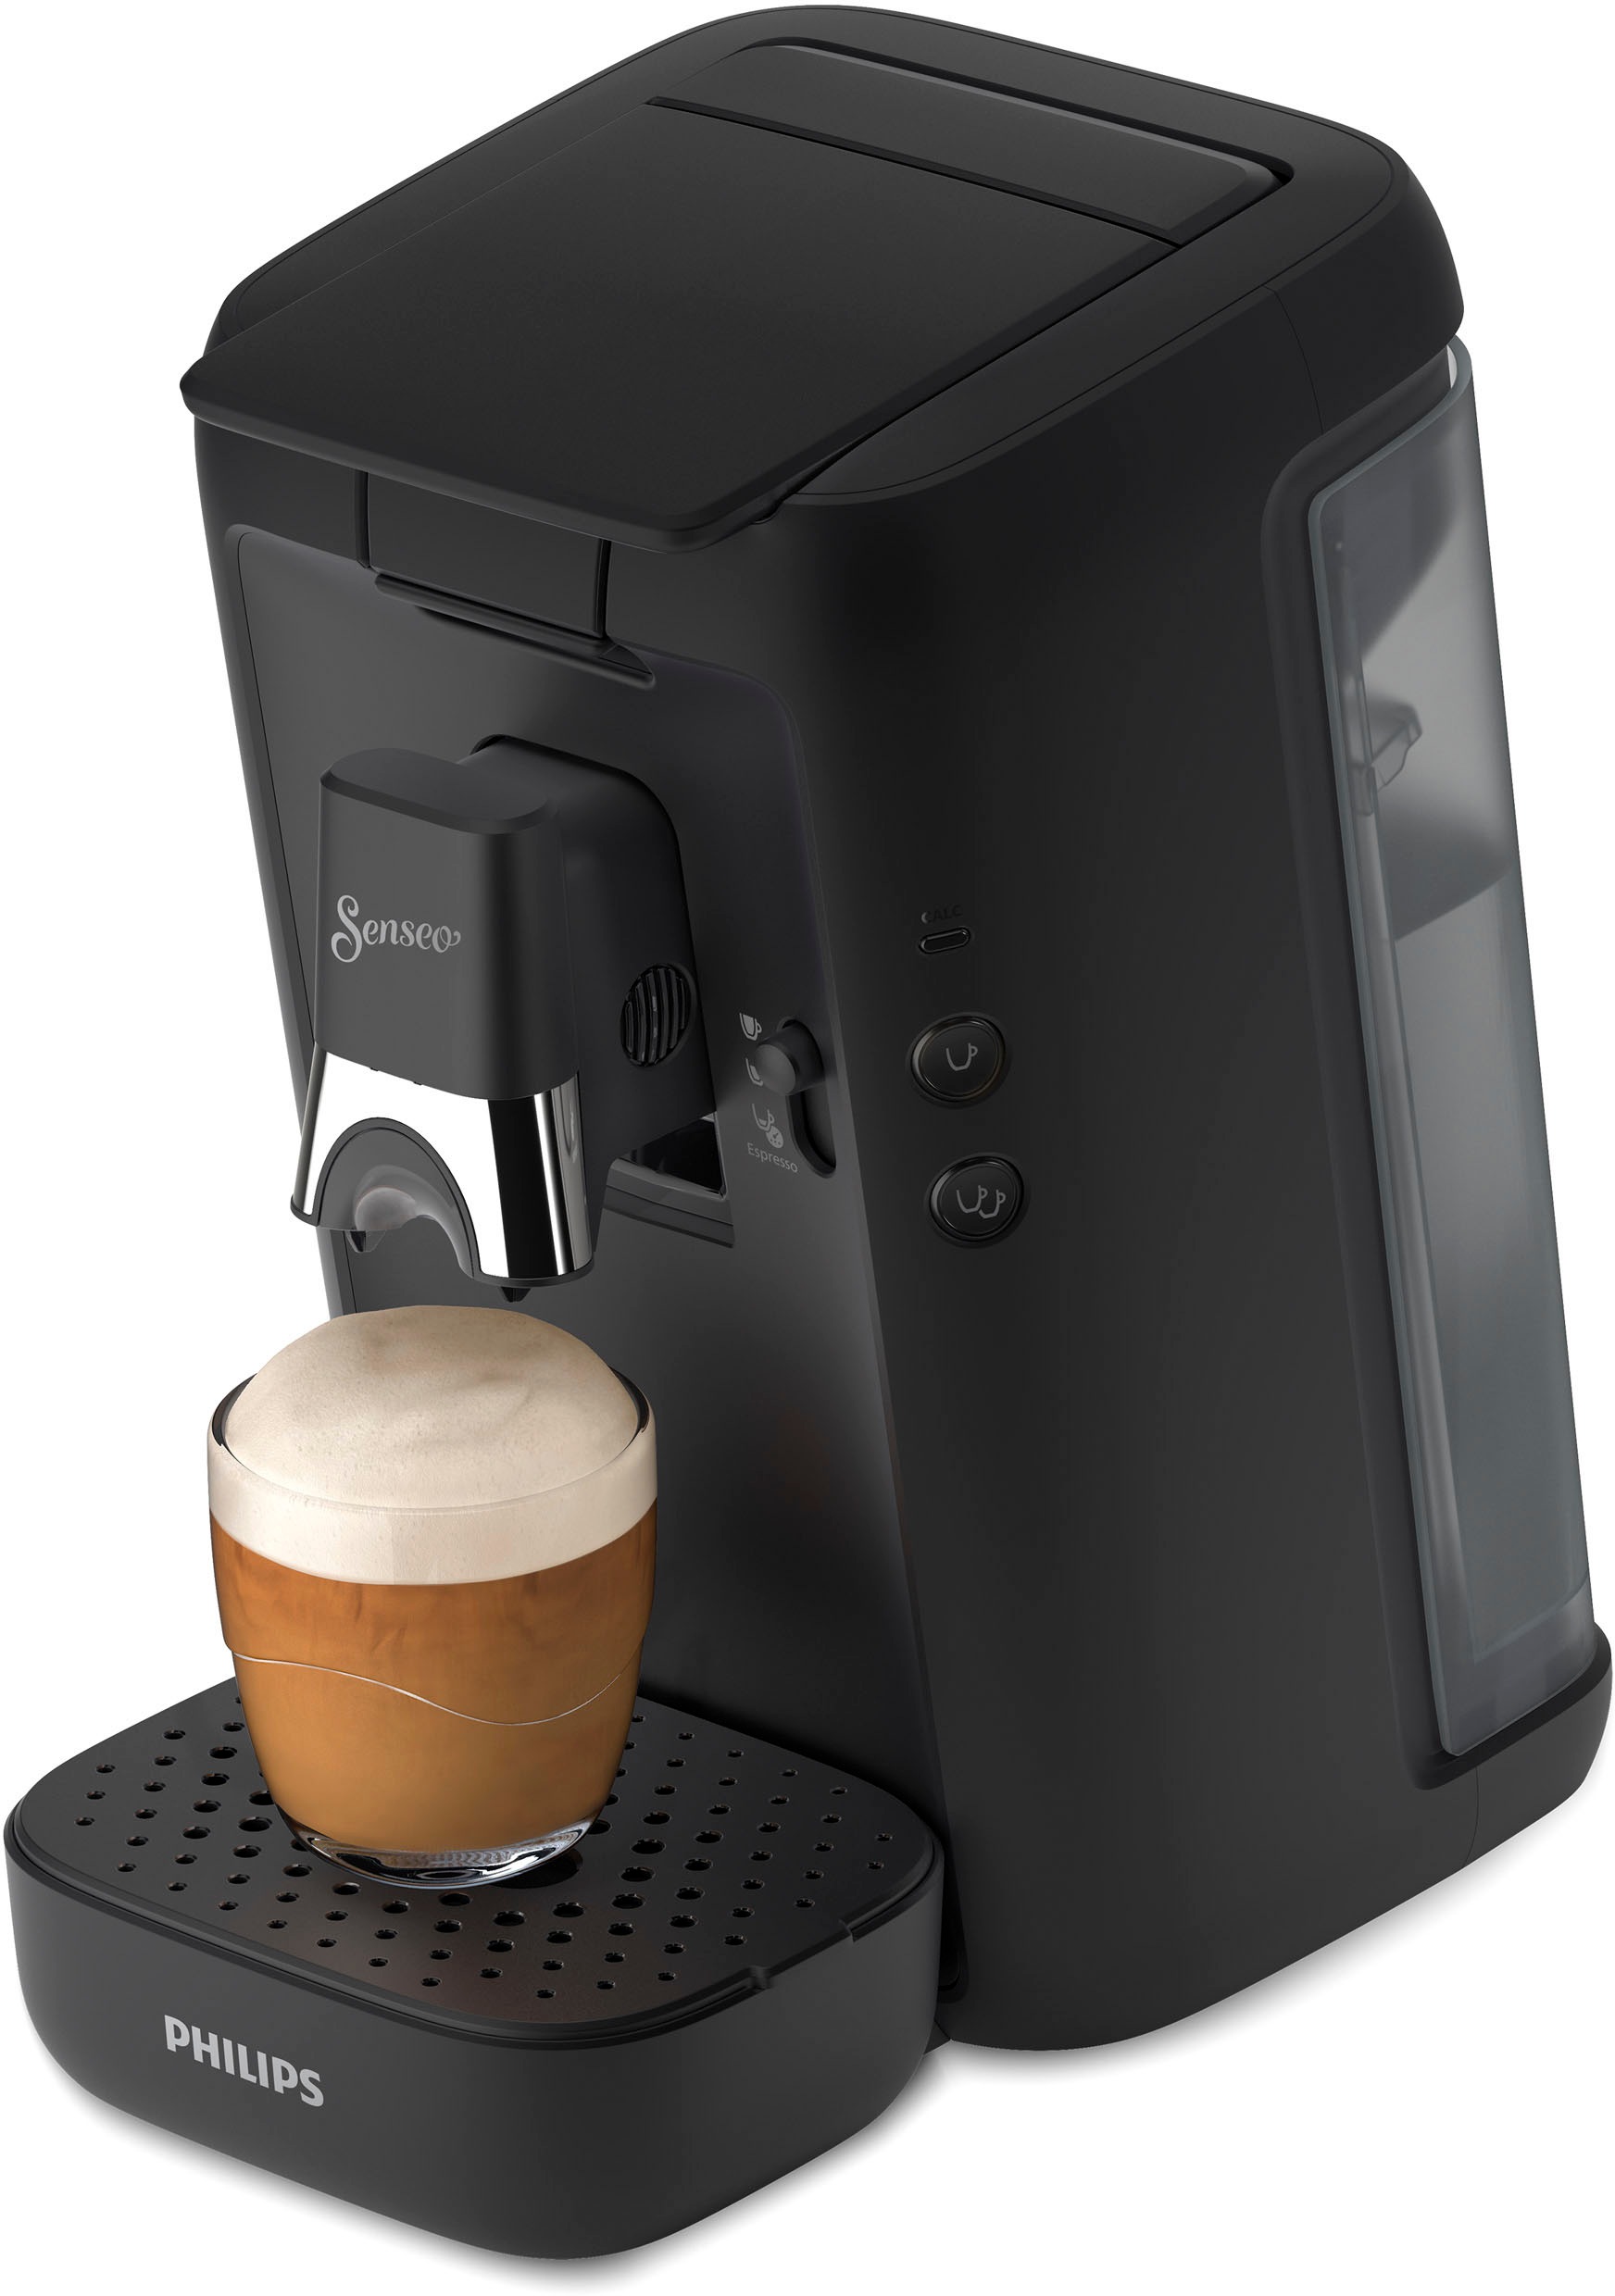 Philips Senseo Kaffeepadmaschine „Maestro CSA260/60“, inkl. Gratis-Zugaben im Wert von € 14,- UVP tiefschwarz, matt Rabatt: 17 %